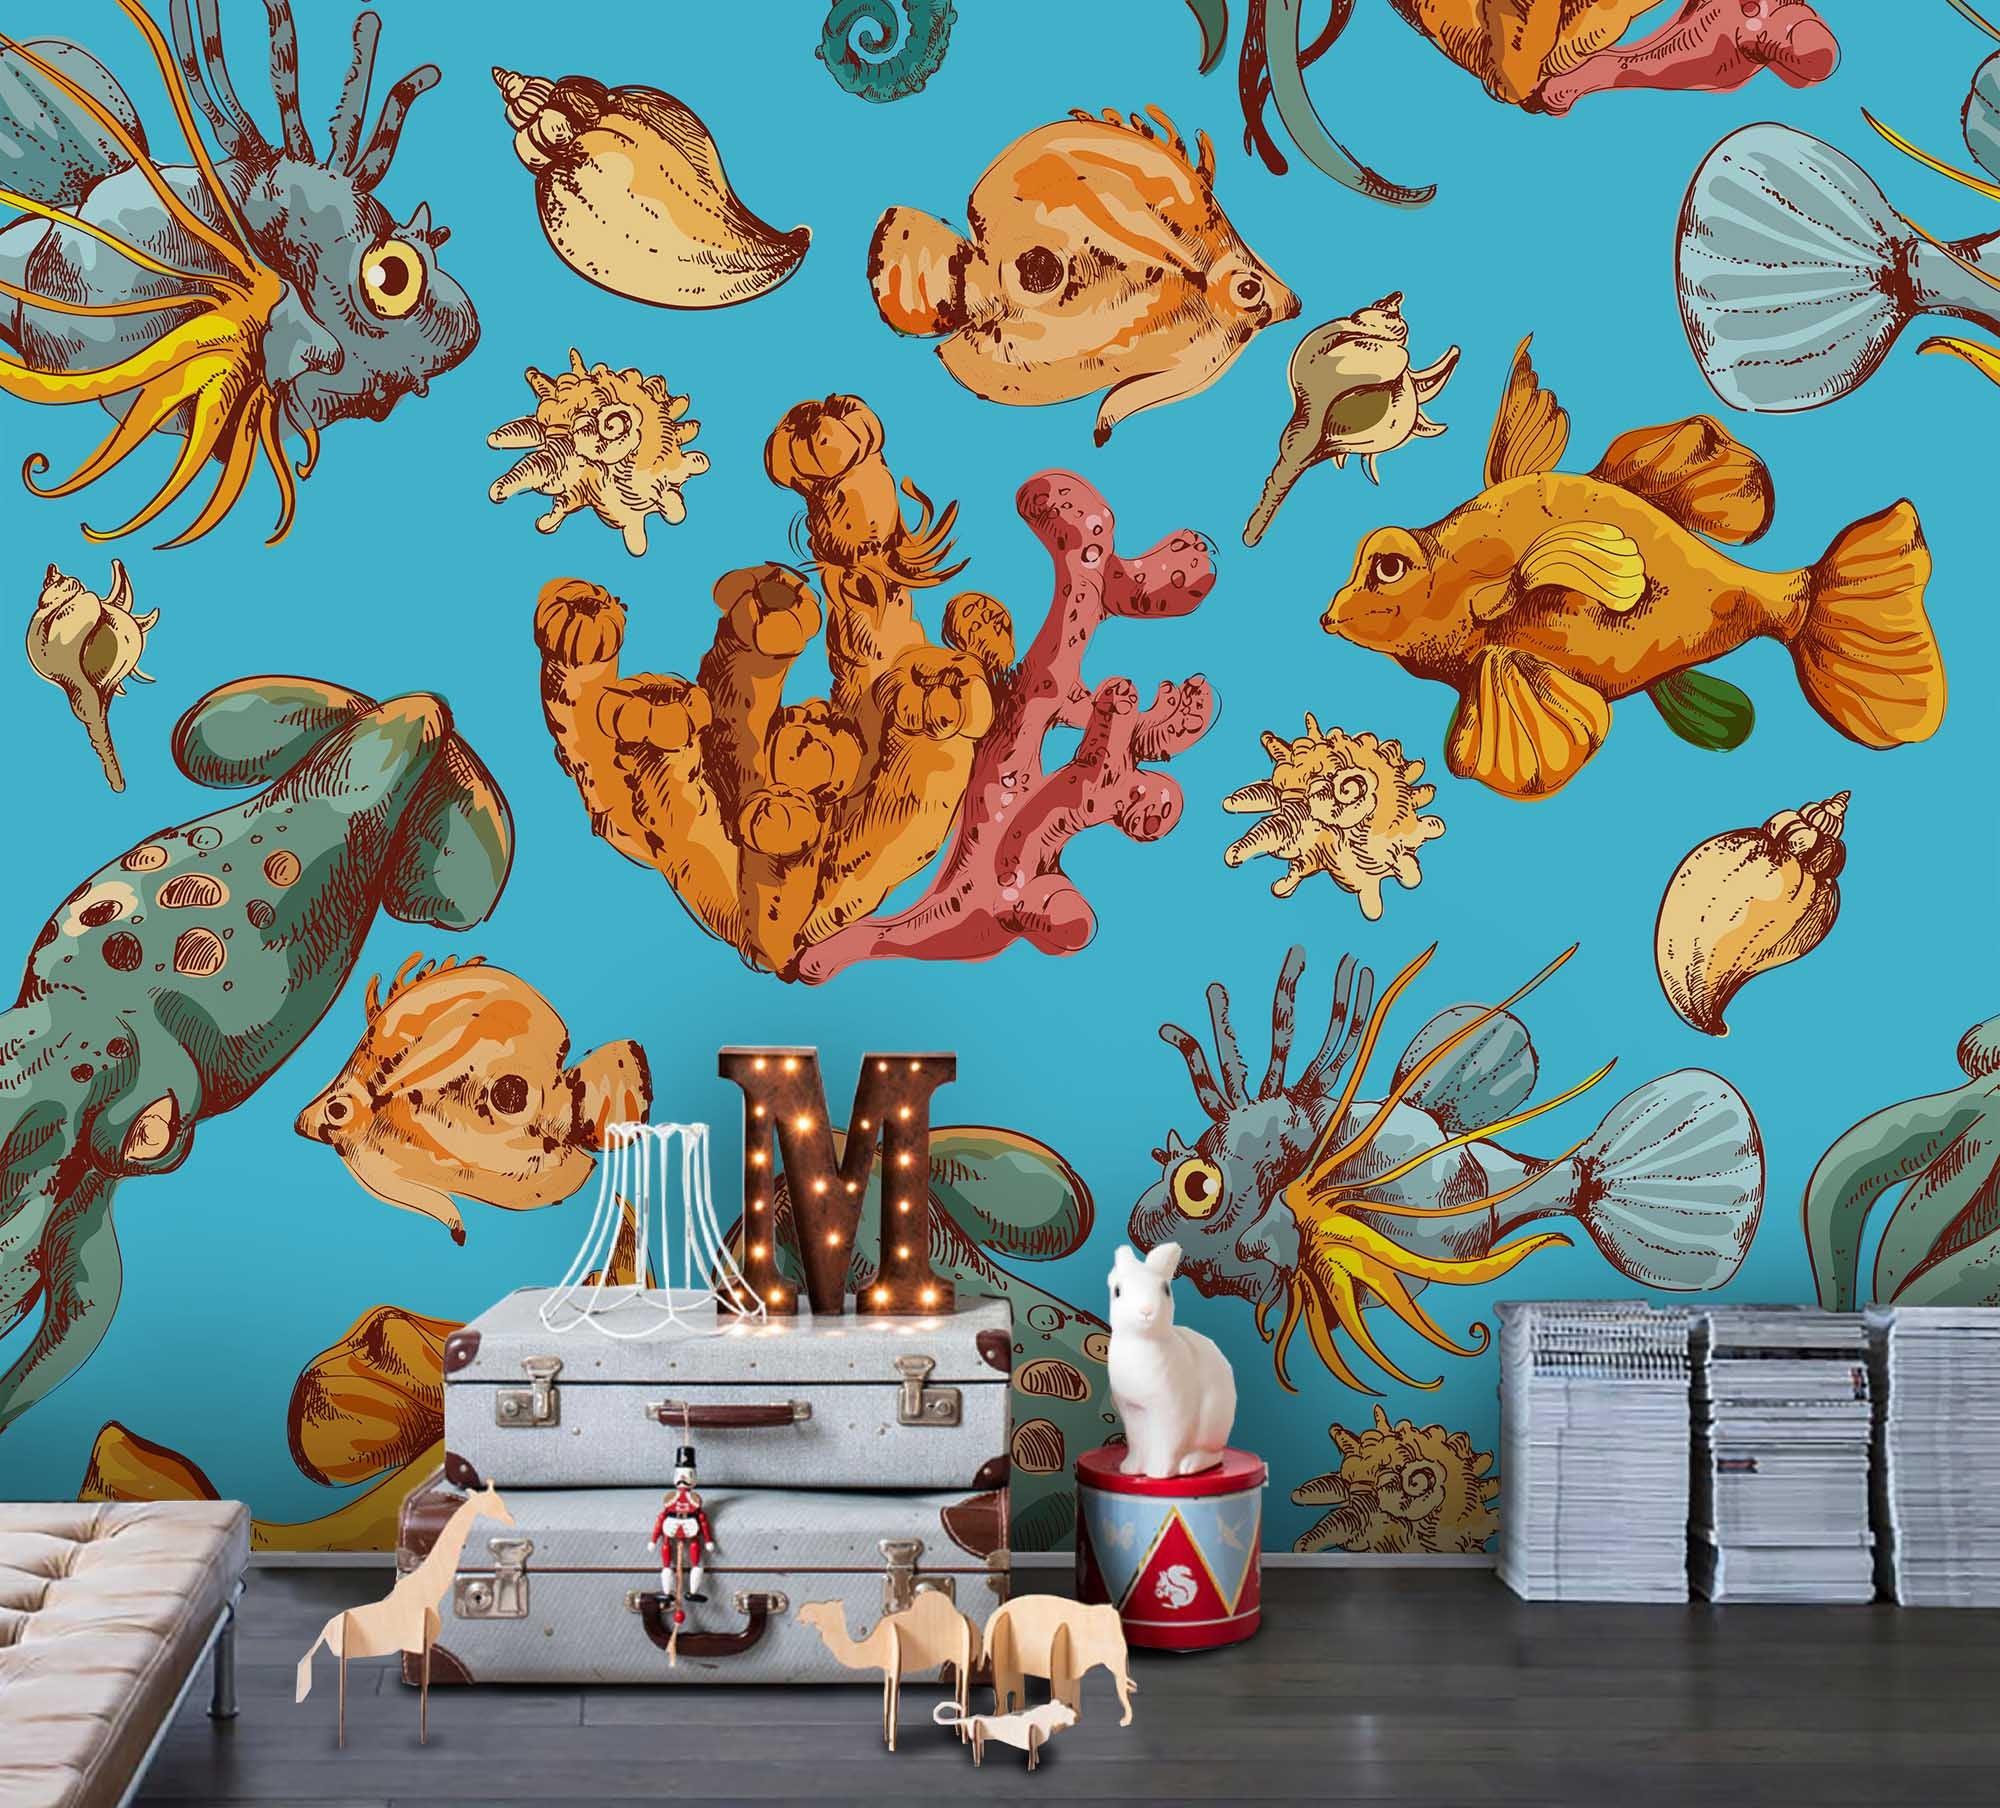 3D Cartoon Ocean Fish Wall Mural Wallpaper A211 LQH- Jess Art Decoration